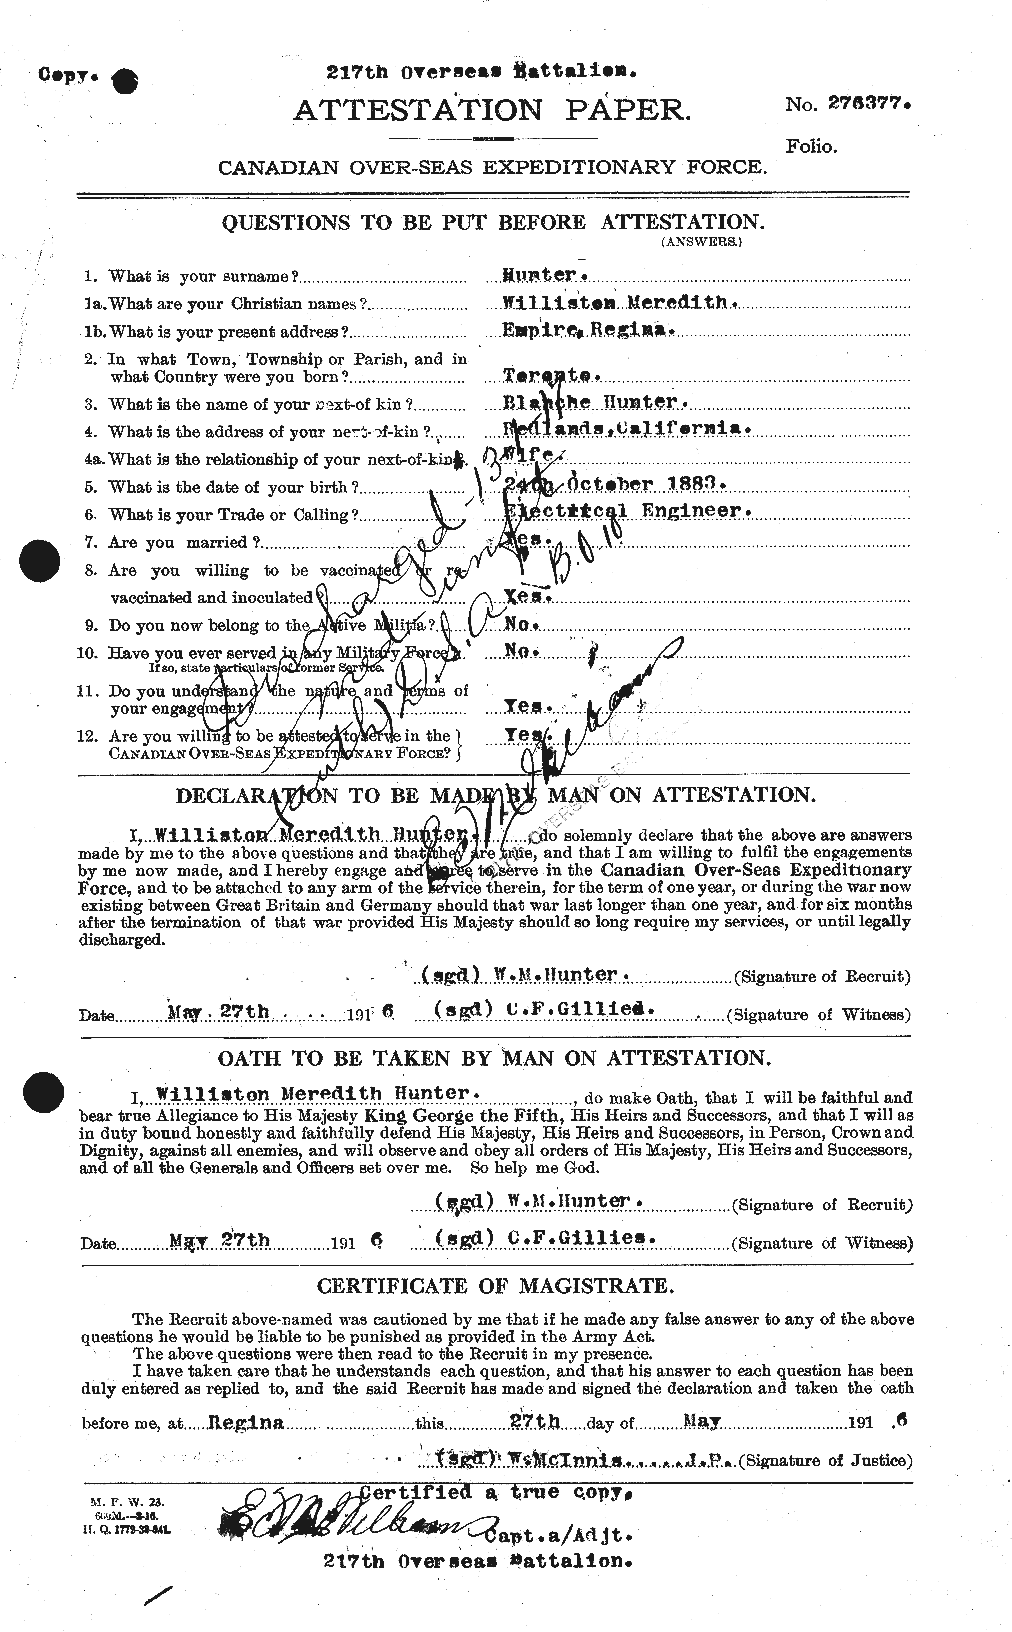 Dossiers du Personnel de la Première Guerre mondiale - CEC 408240a